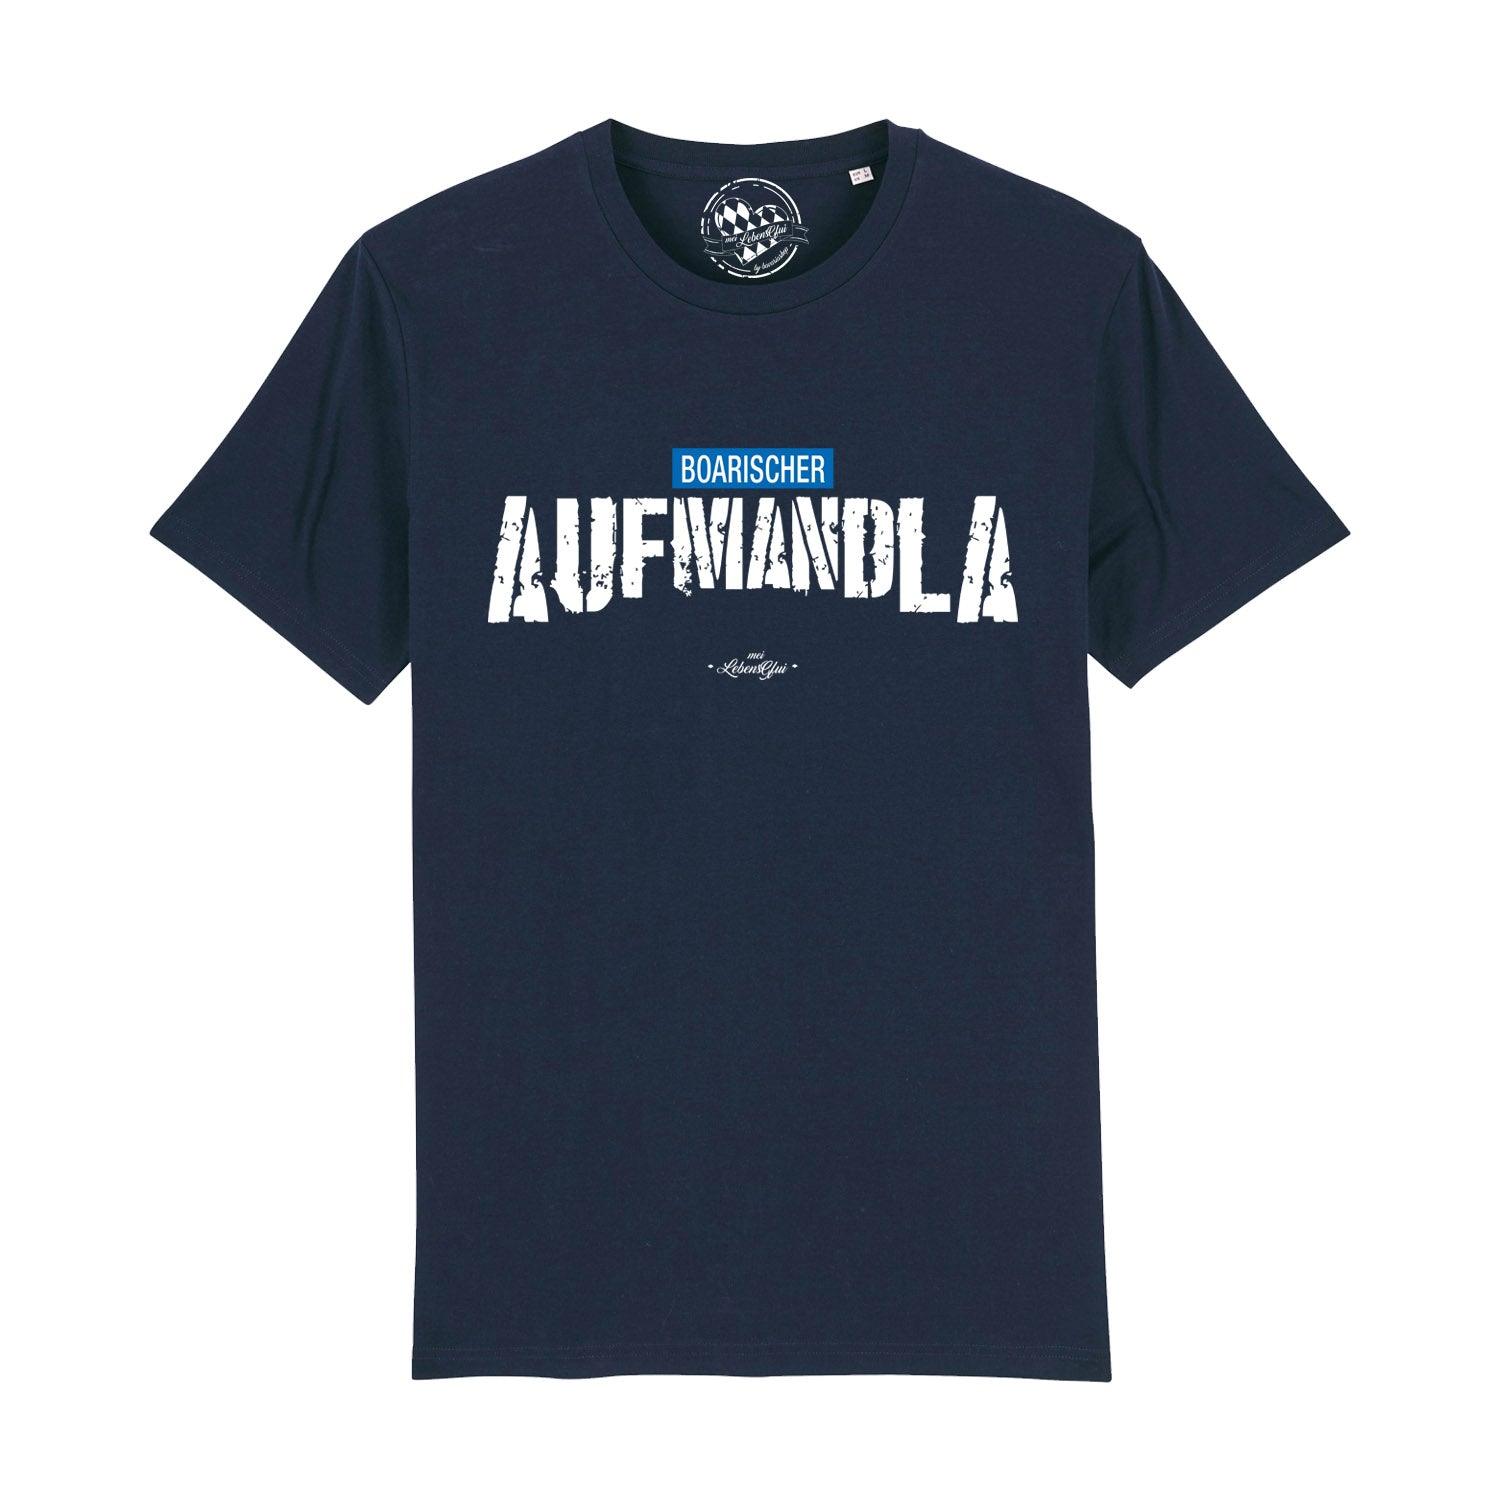 Herren T-Shirt "Aufmandla" - bavariashop - mei LebensGfui